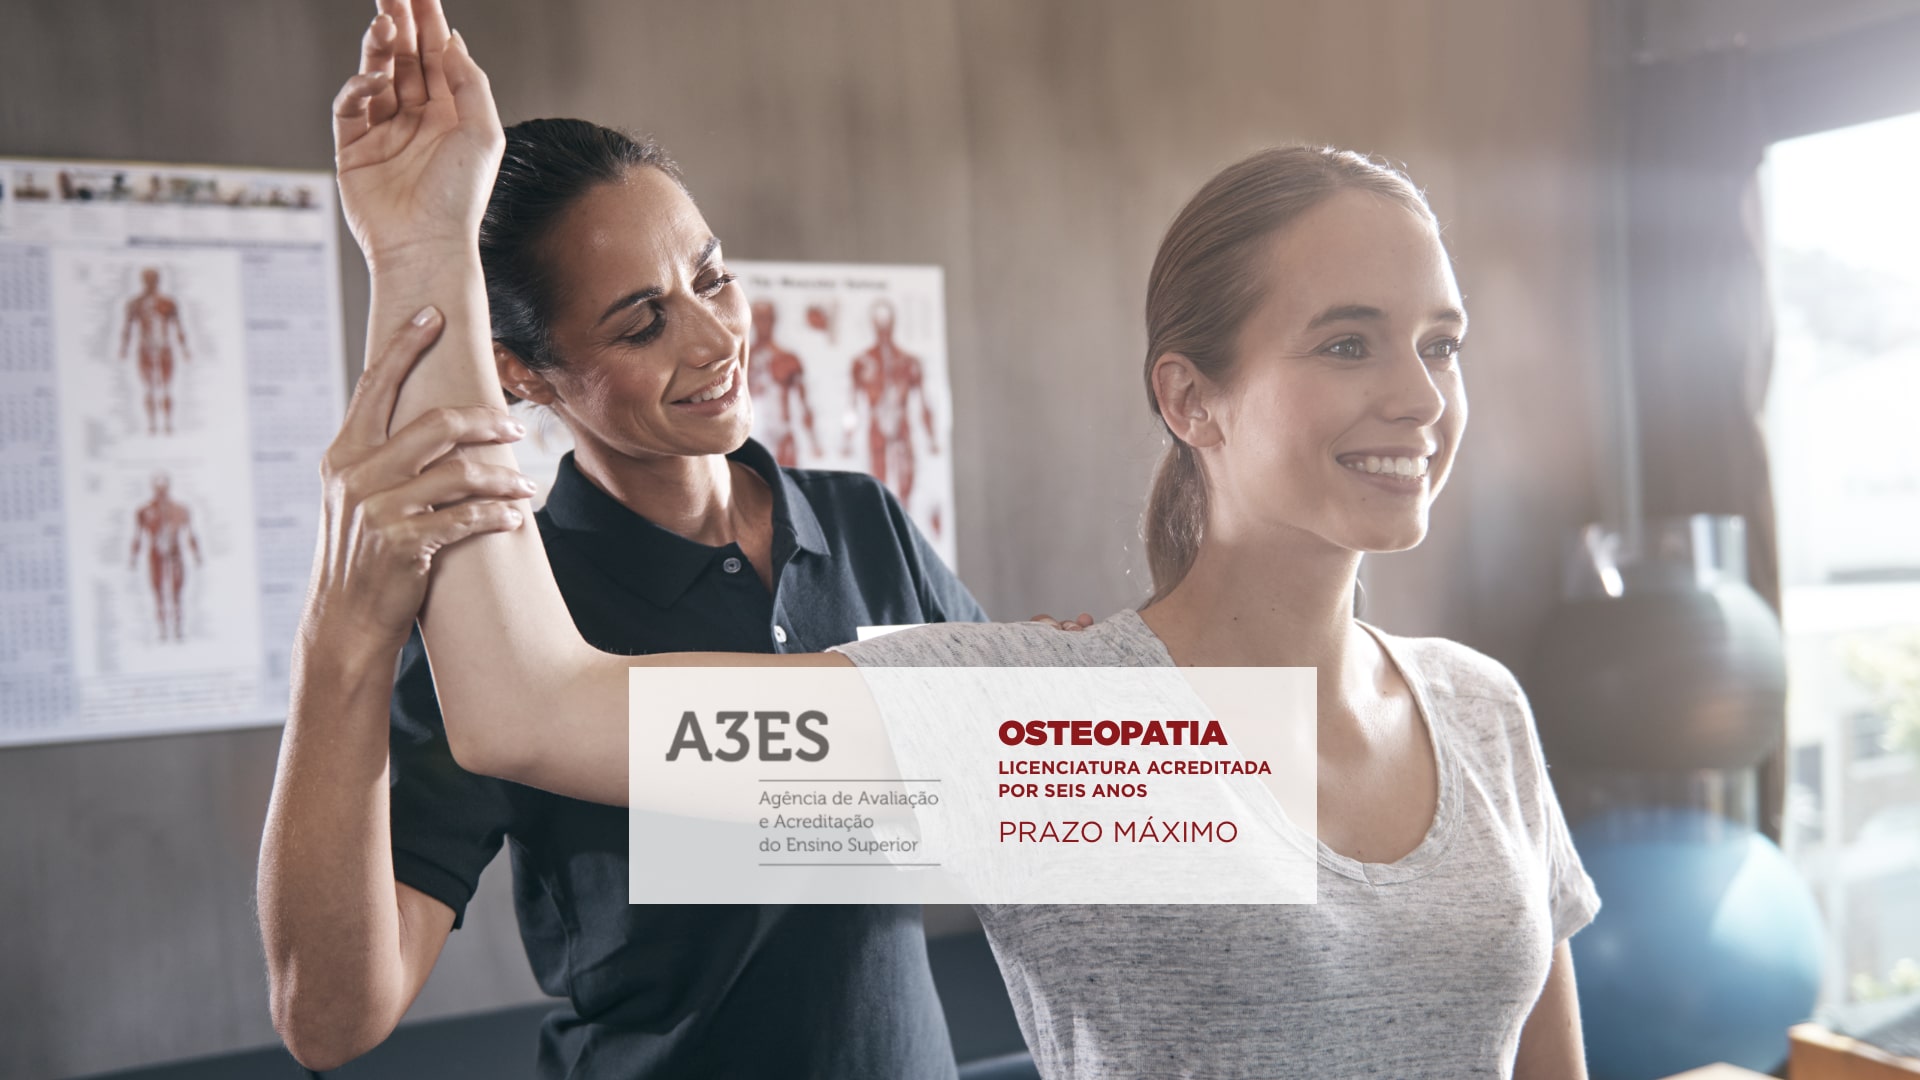 Licenciatura de Osteopatia em Silves acreditada pelo período máximo de 6 anos